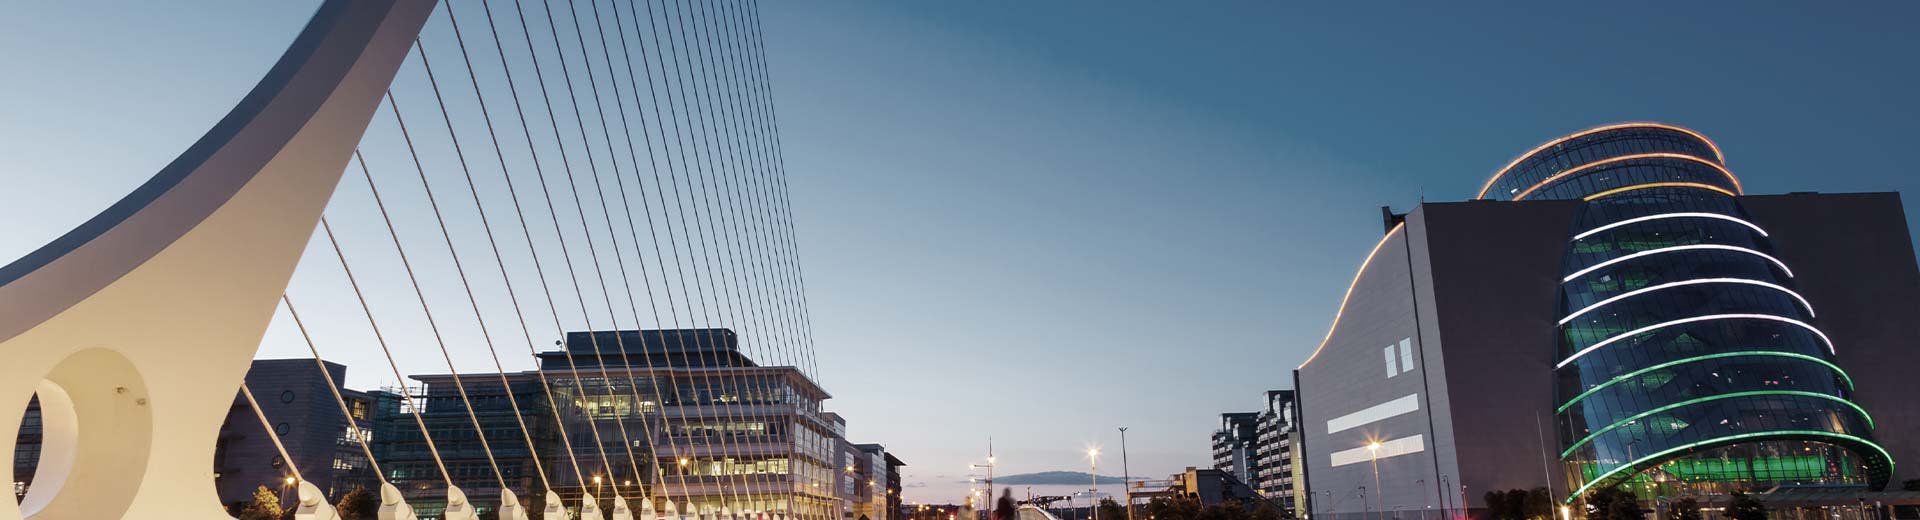 Handelsgebäude und eine moderne Brücke während eines dunkleren Teils des Tages in Dublin.